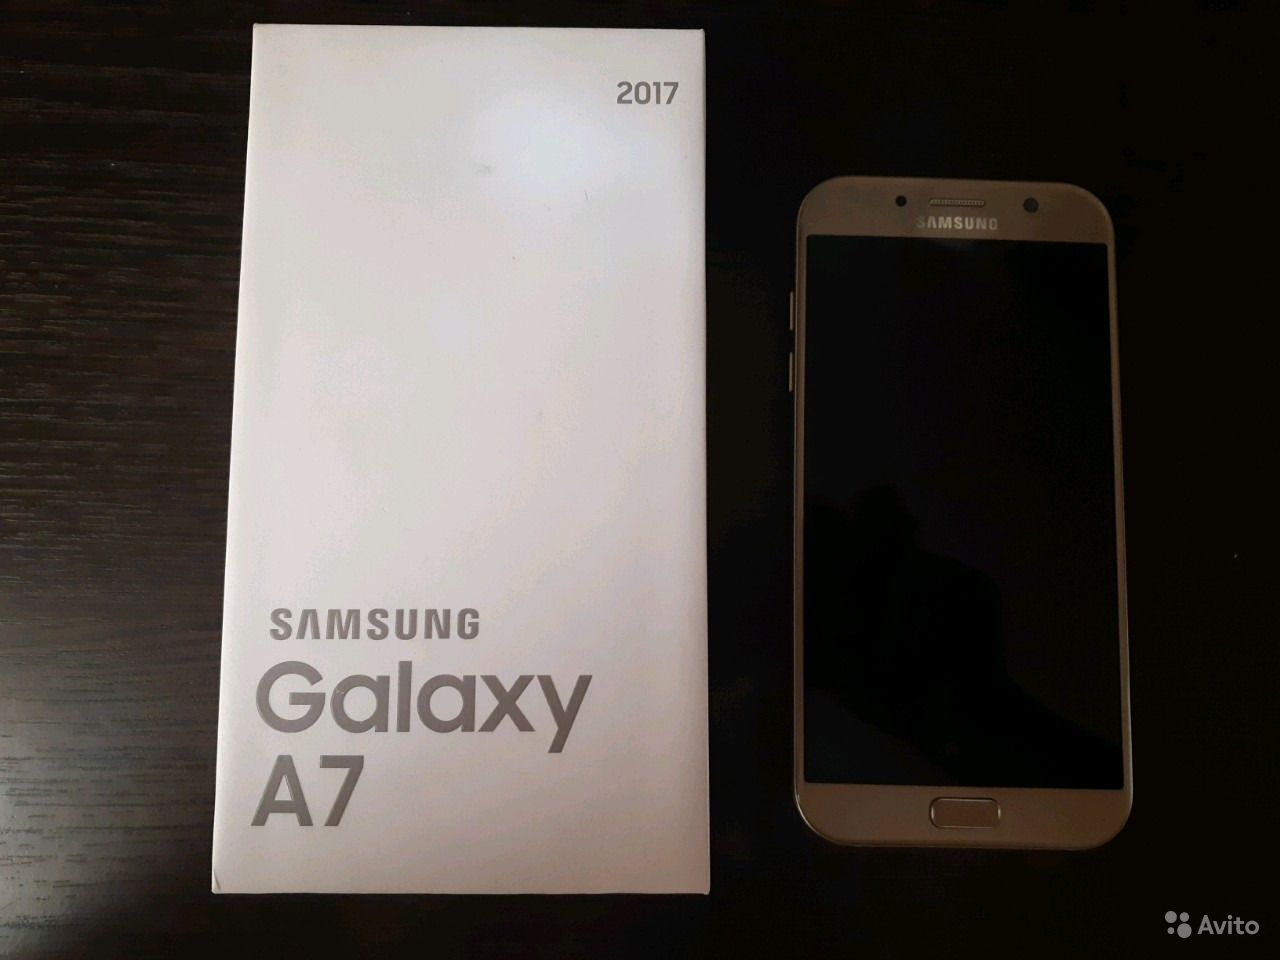 Samsung Galaxy a52